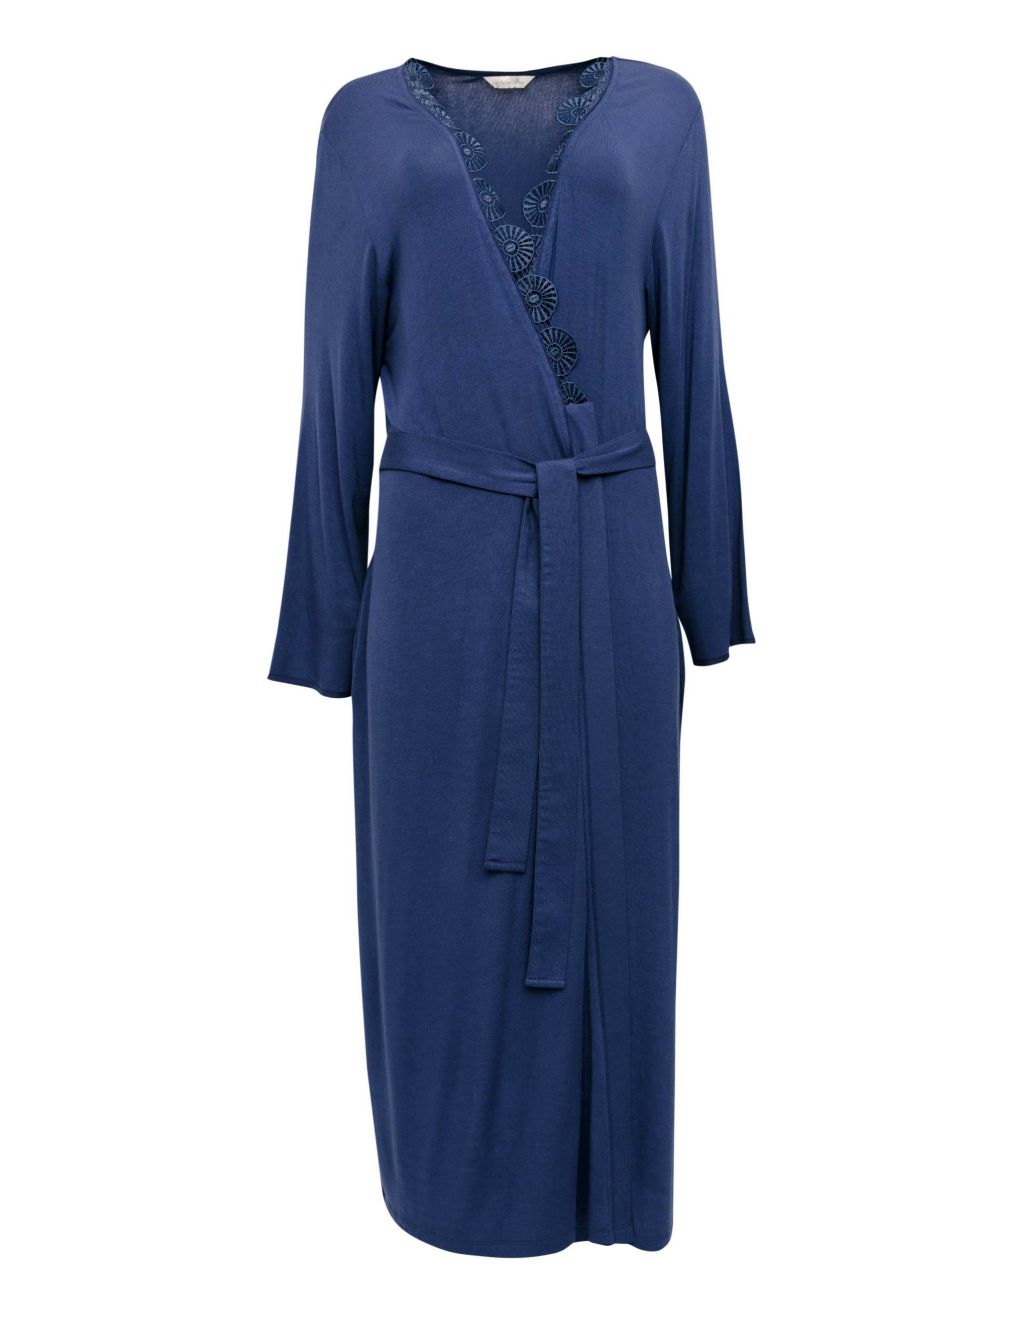 Modal Rich Lace Trim Long Dressing Gown image 2